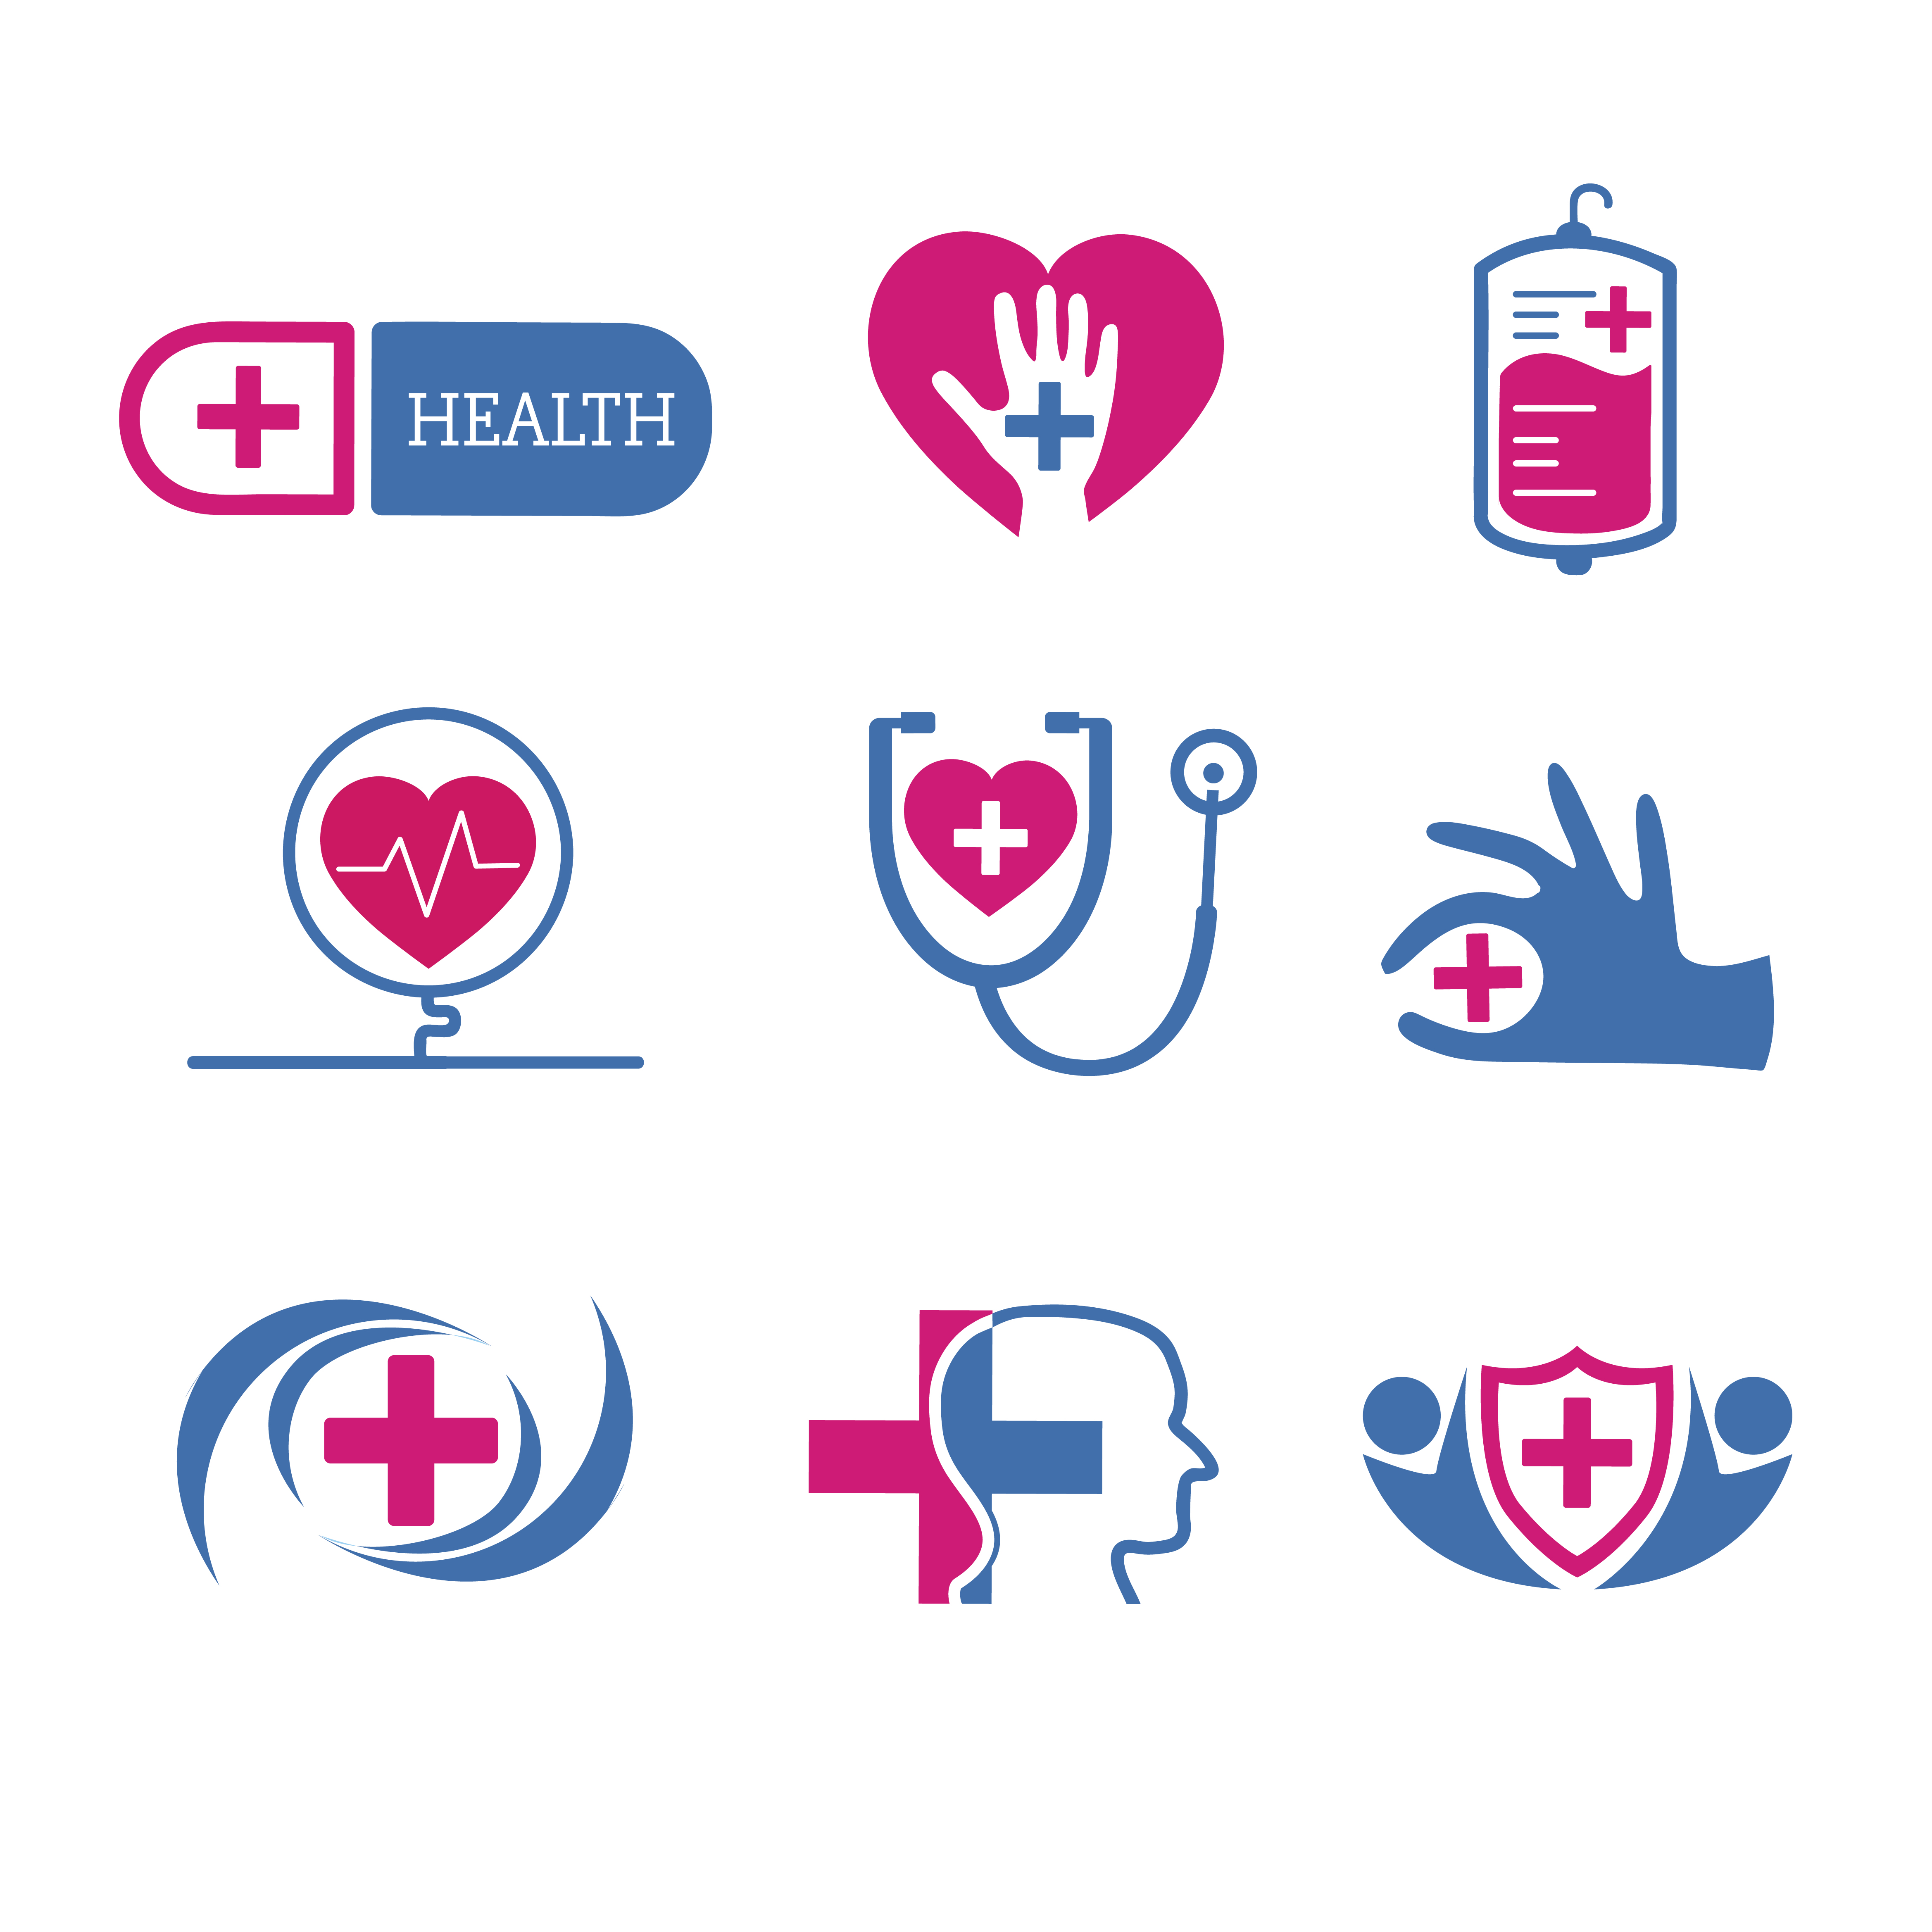 Medical service logos vector set - Download Free Vectors, Clipart ...